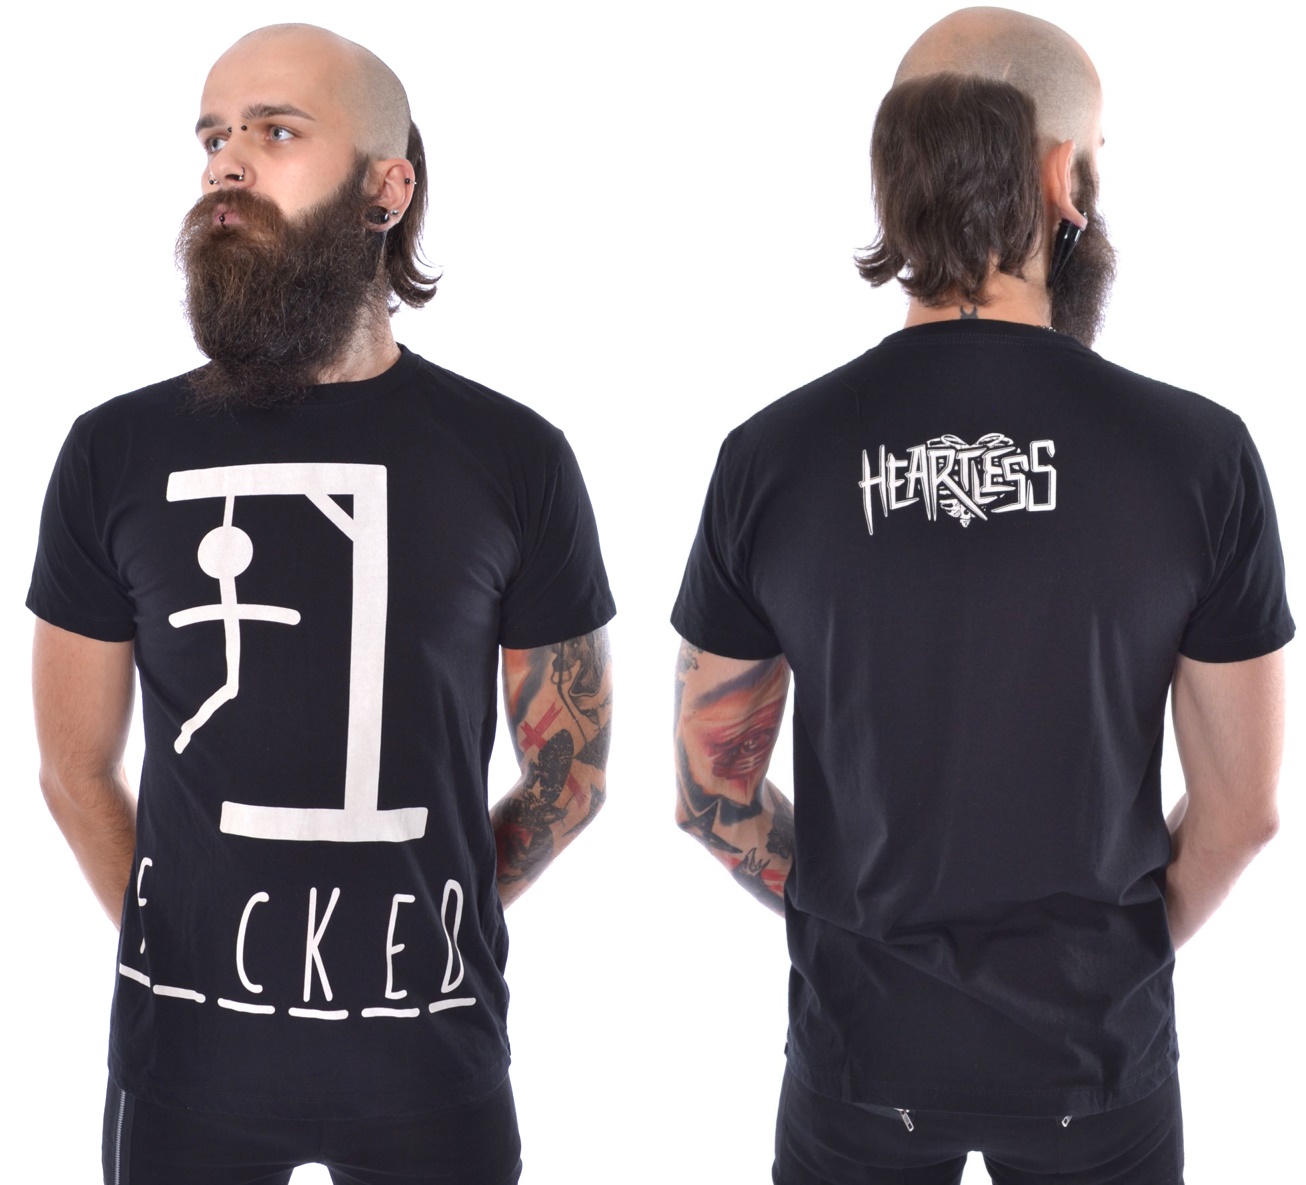 Hangman T-Shirt Heartless - Heartless Männershirts kurzam - Details ...